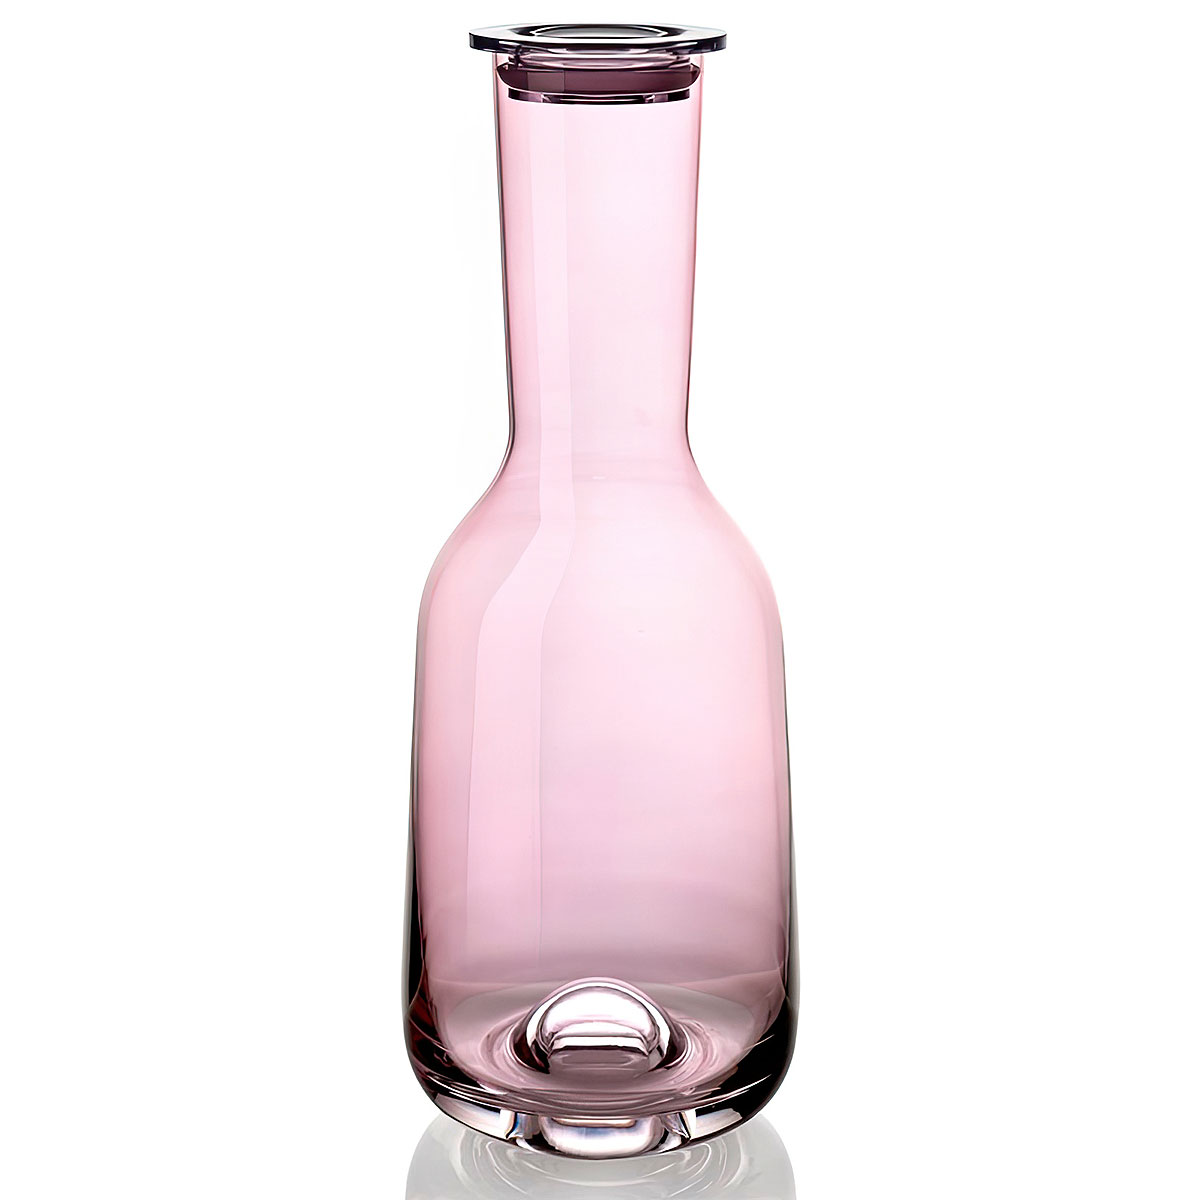 Бутылка с крышкой IVV Acquacheta, цвет розовый IVV 8342.4